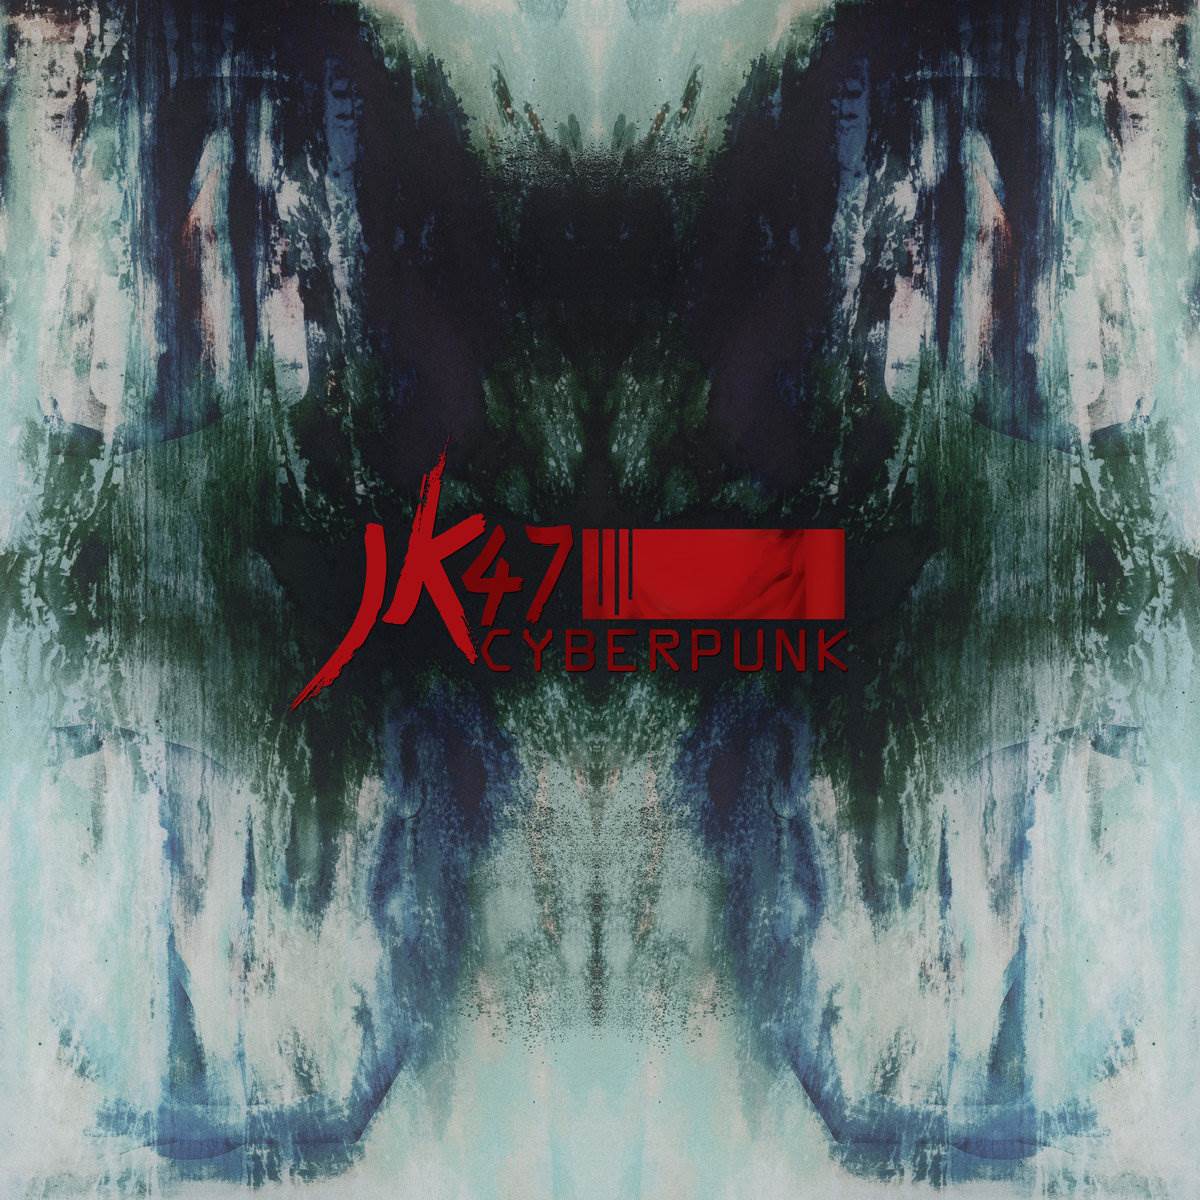 Cyberpunk - Interview with JK/47